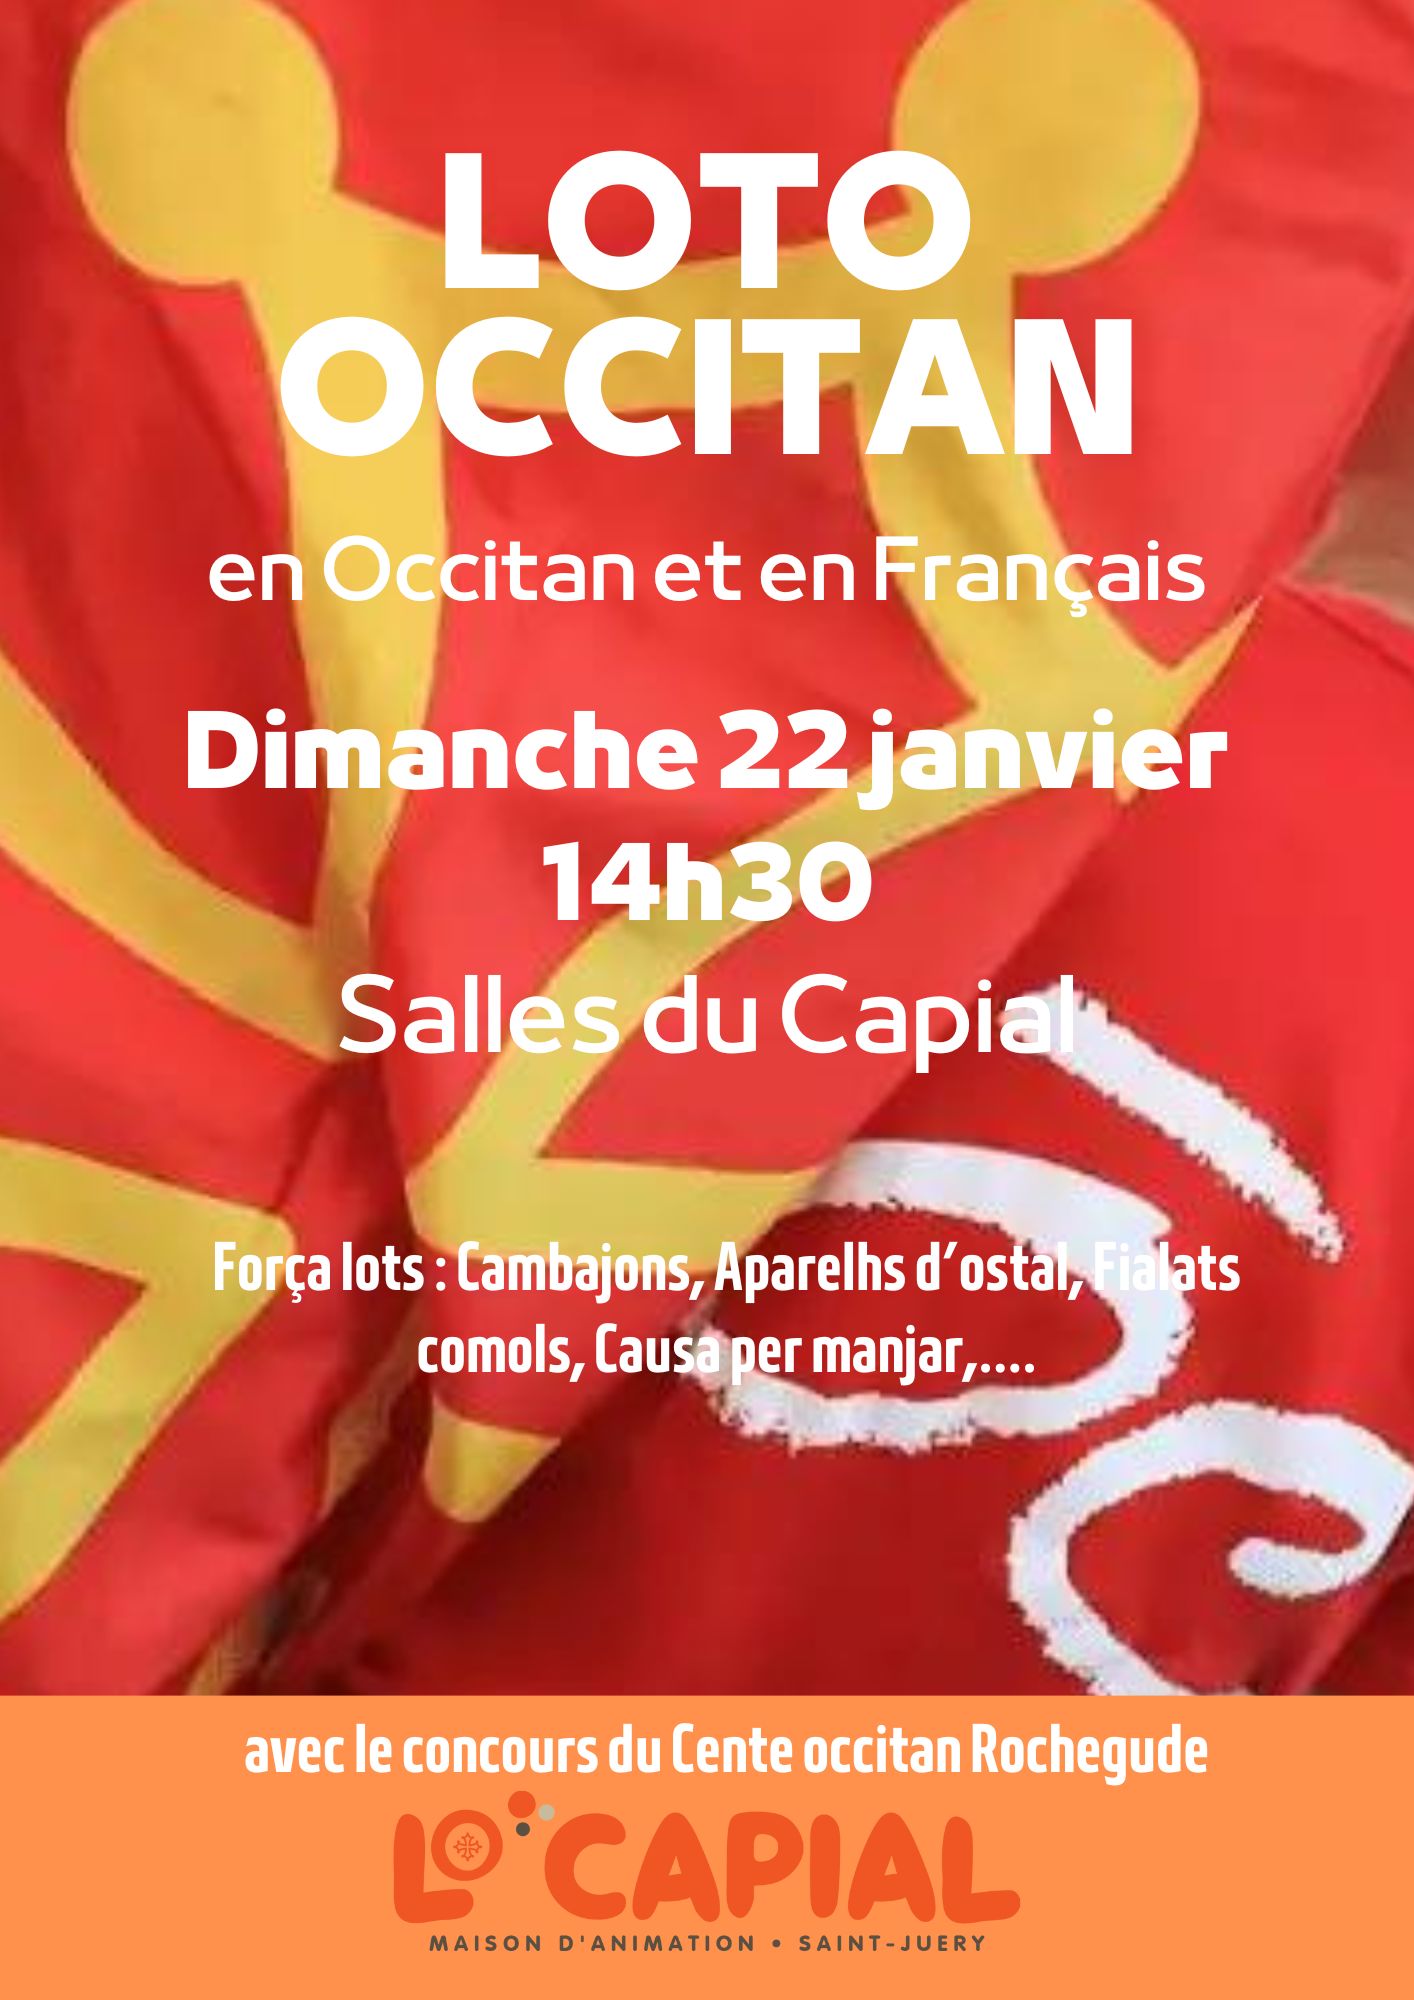 Loto occitan